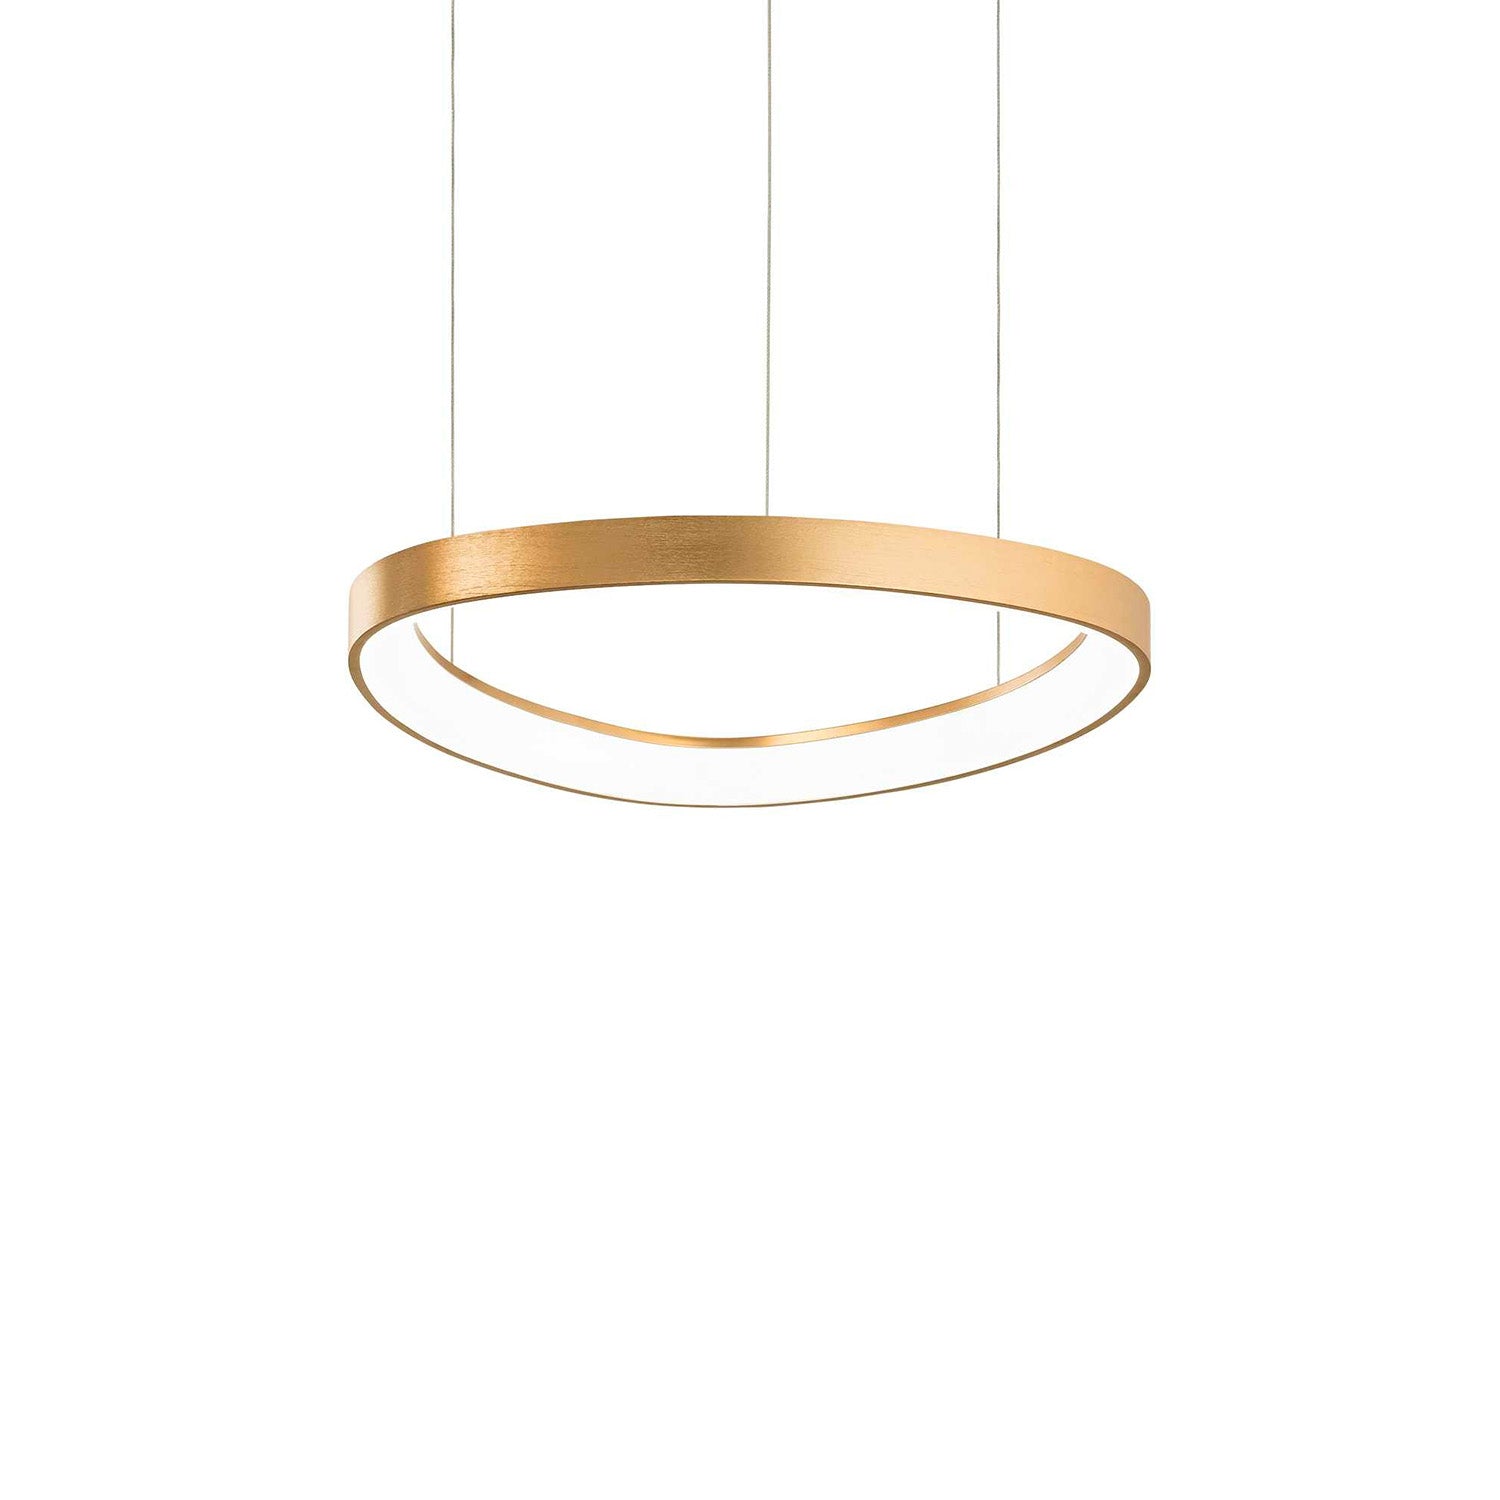 GEMINI - Integrated LED oval pendant light in gold, black or white aluminum